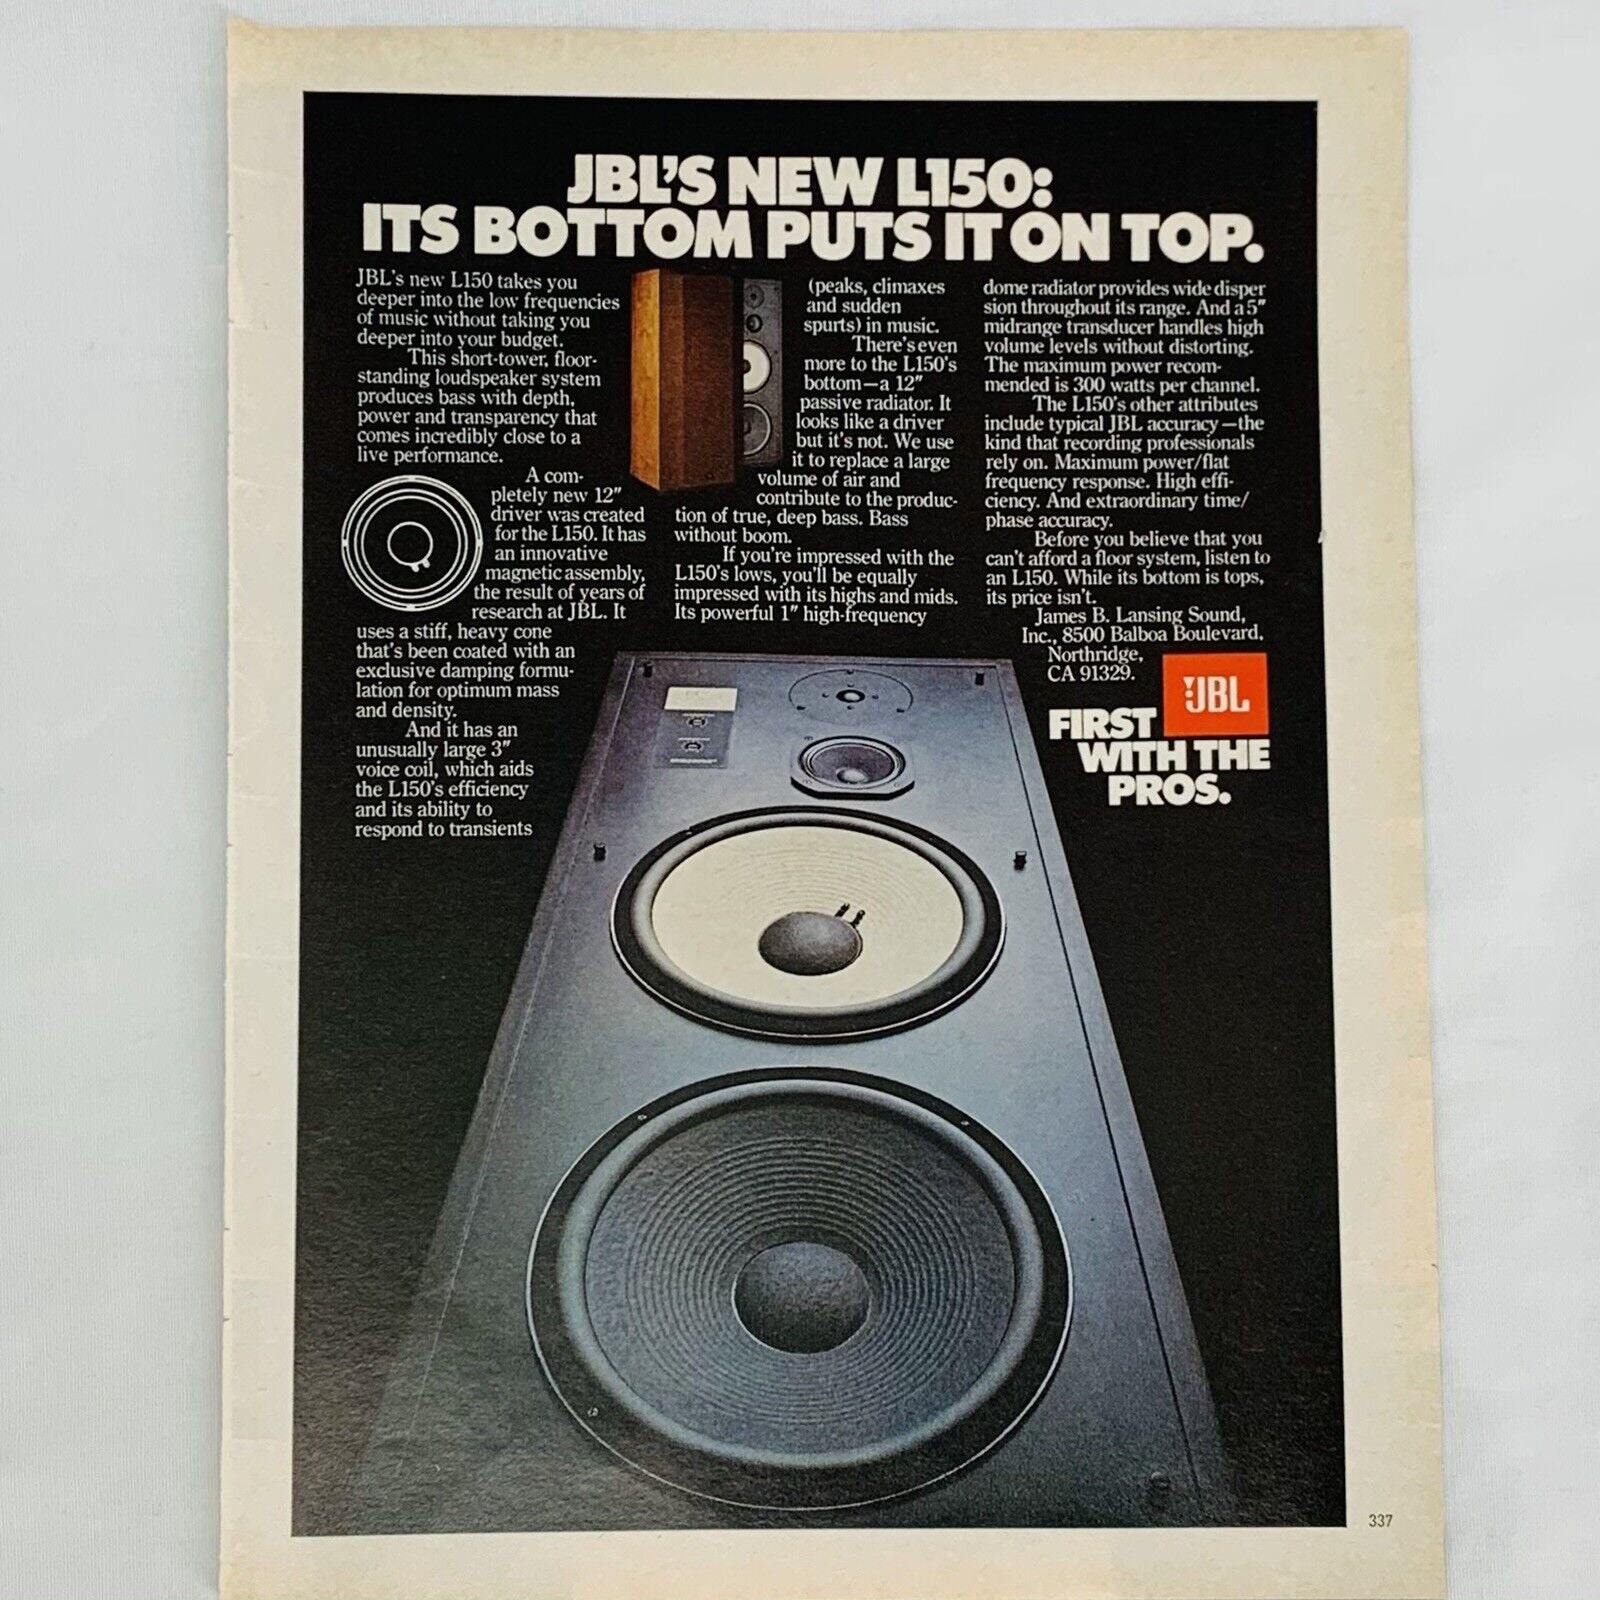 Erfaren person Kirkestol jeg er syg Vintage 1970's JBL L150 Tower Stereo Speakers Magazine - Etsy